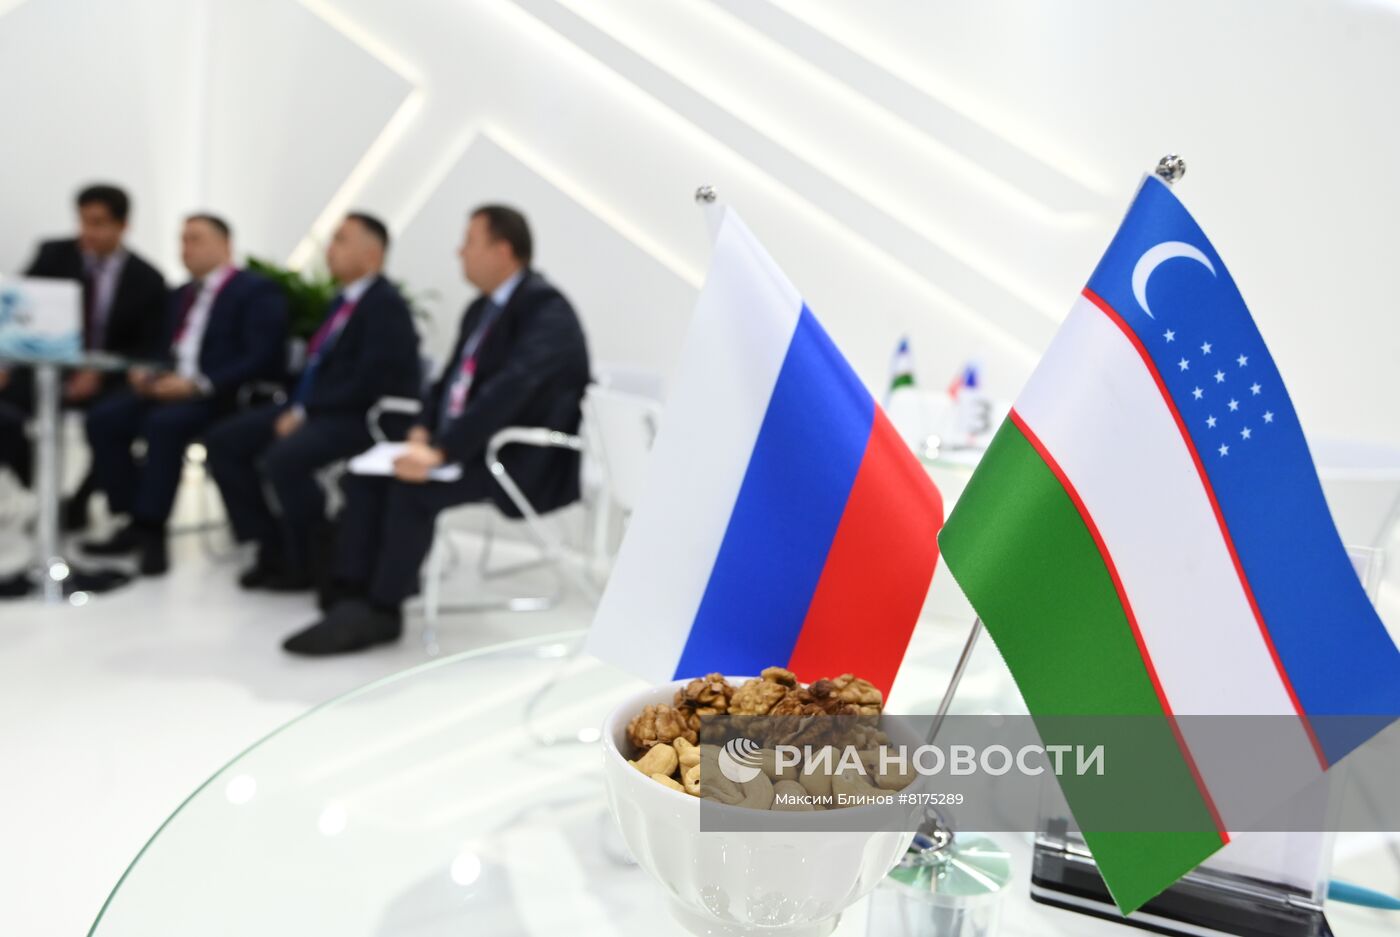 В Ташкенте открылась выставка "Иннопром. Центральная Азия 2022"